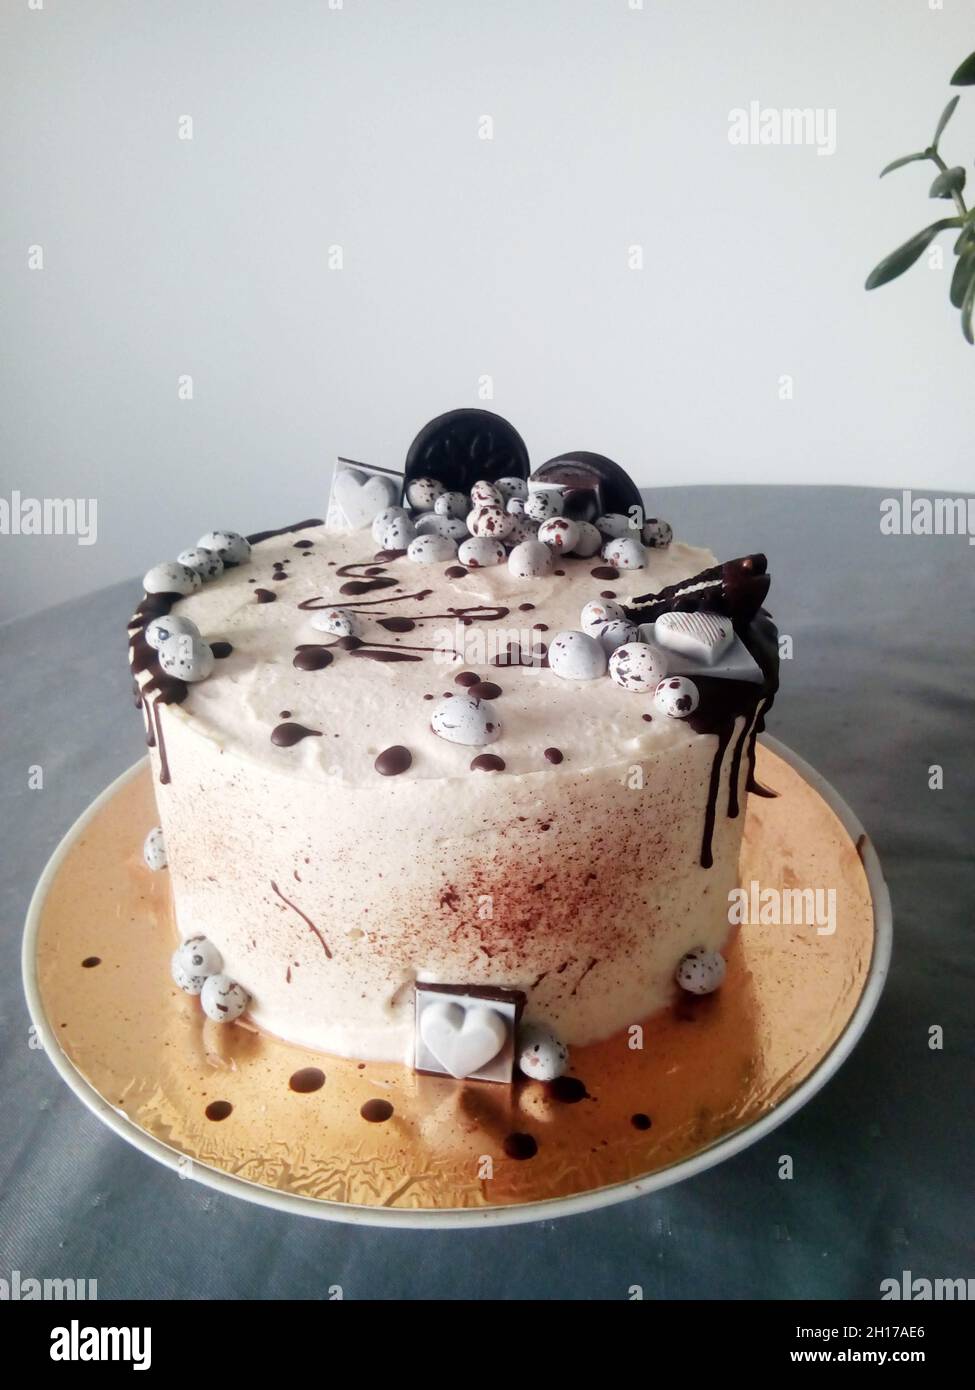 Schwarz-weißer Kuchen mit Keksen, Bonbons und Schokolade auf grauem Tisch Stockfoto